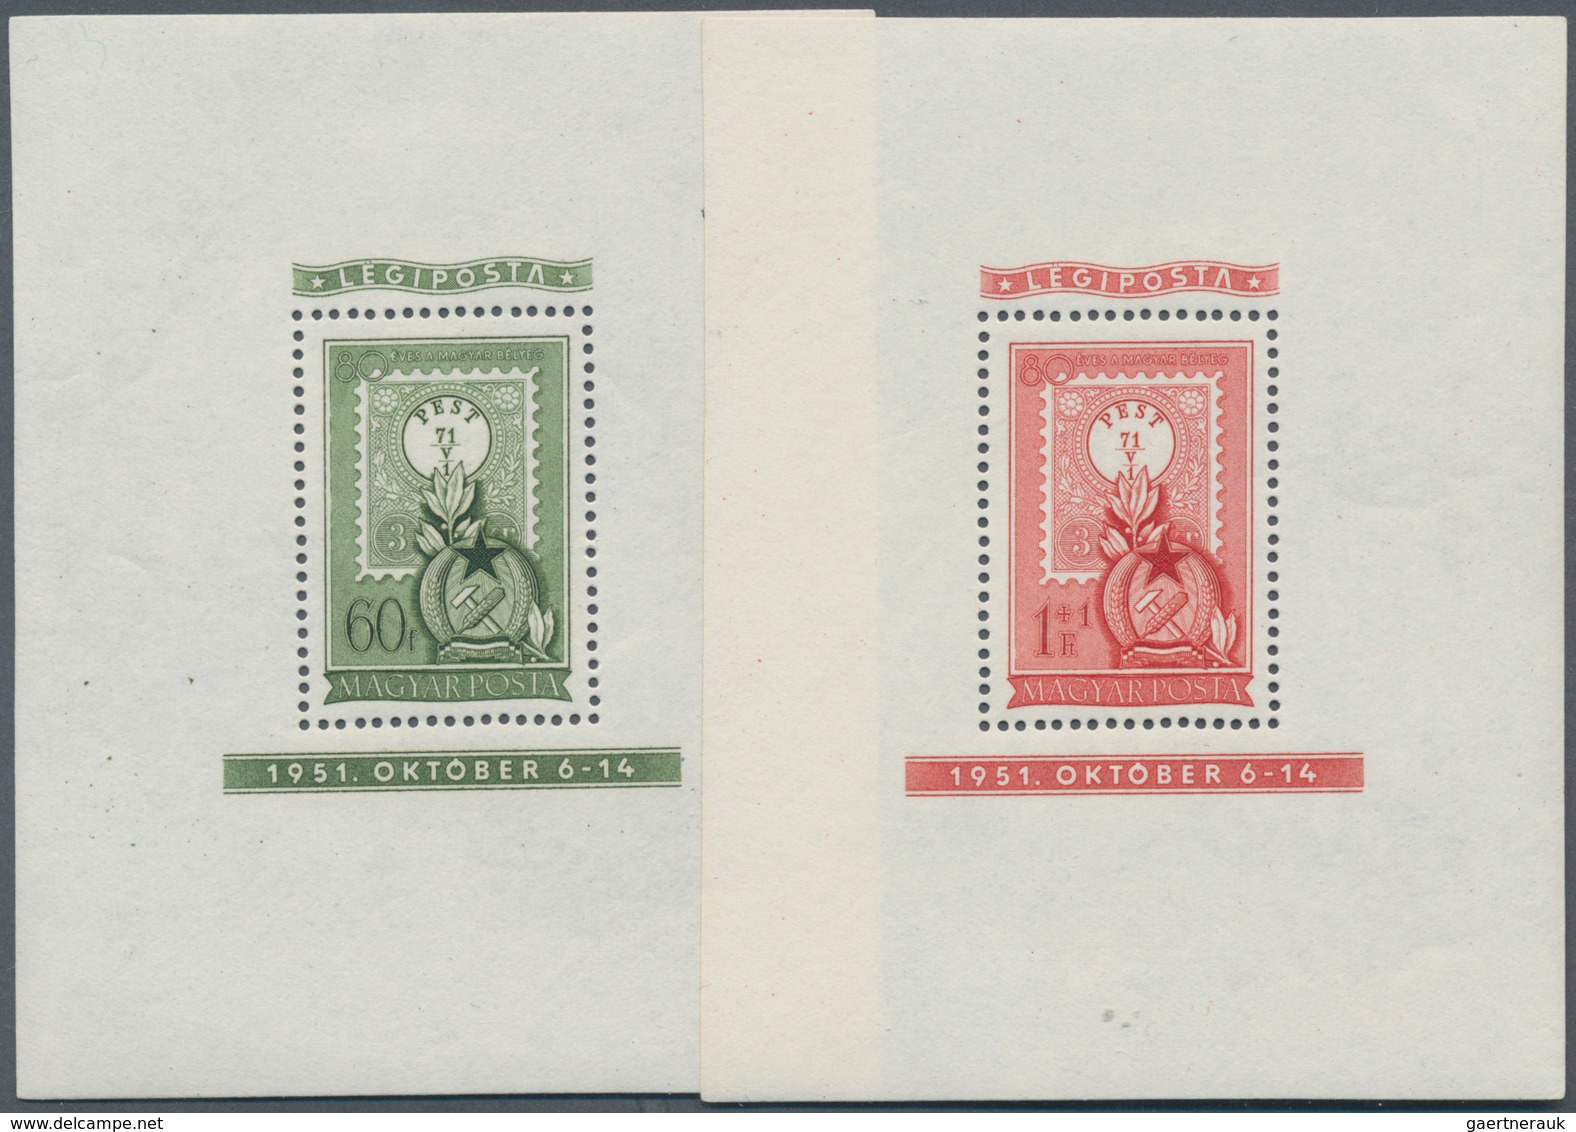 Ungarn: 1949/1951, postfrische gezähnte Blockausgaben "Geb. Stalin", "Ungarische Briefmarken", "Welt